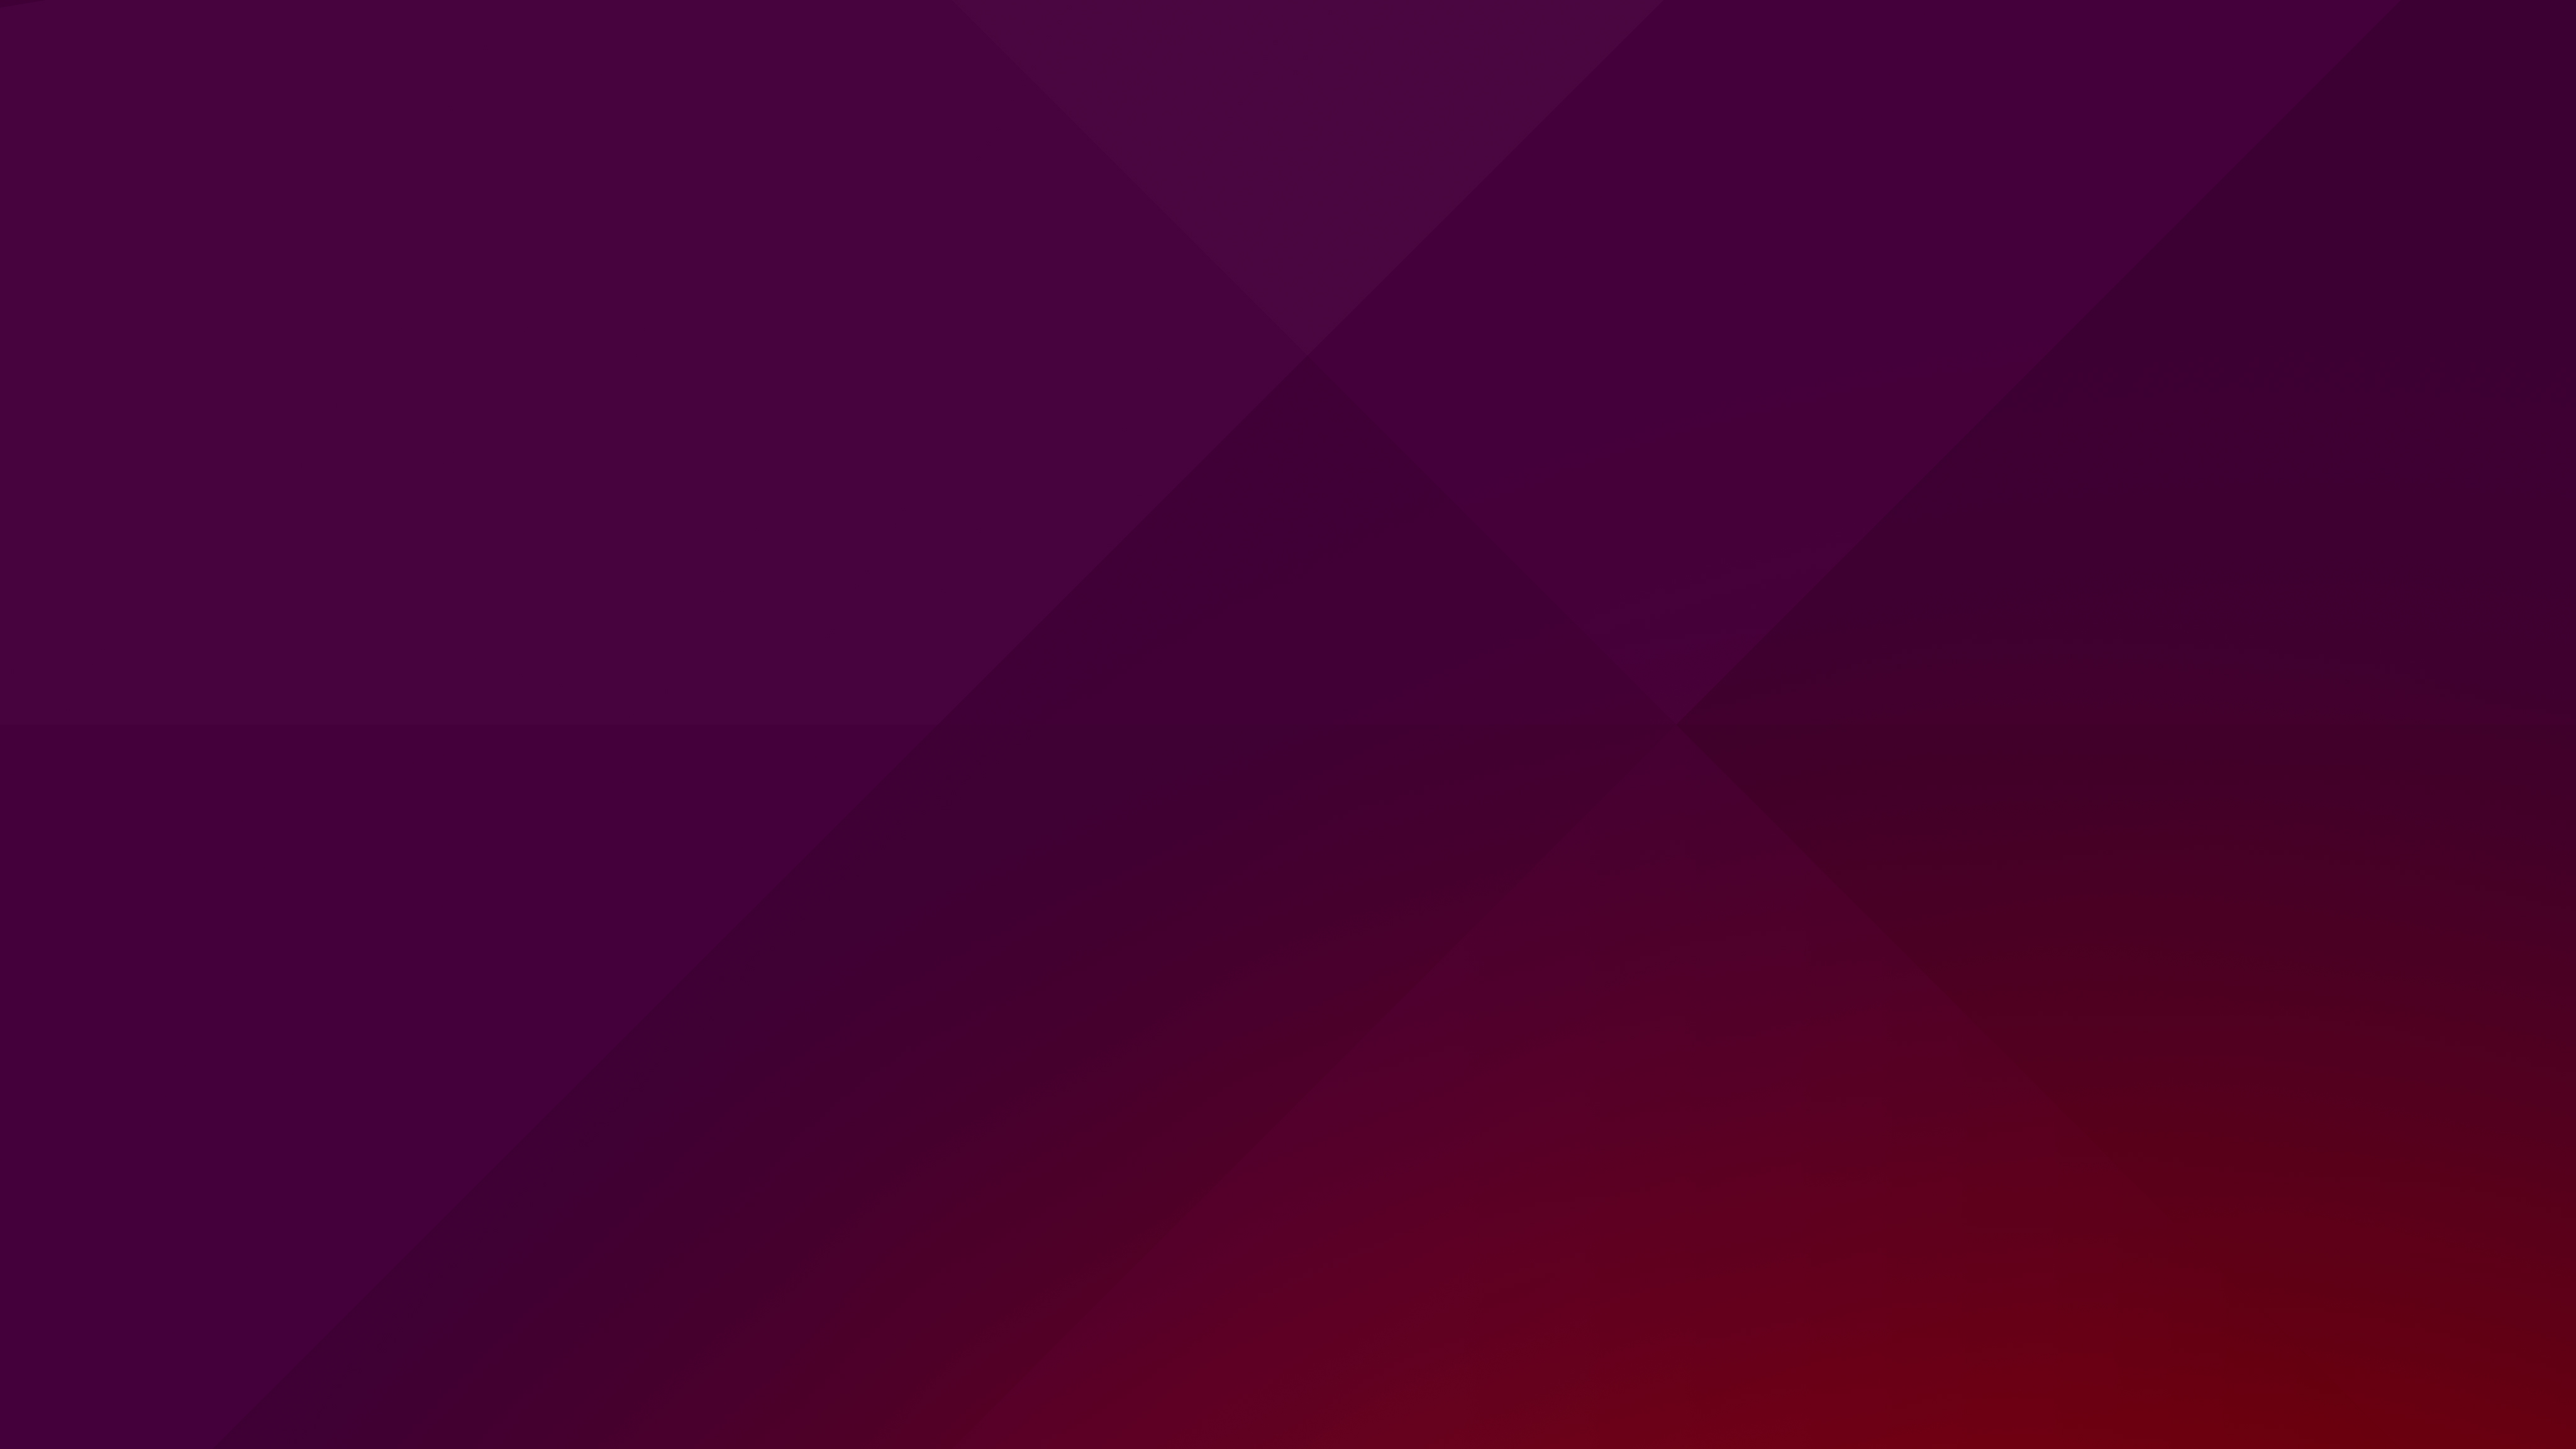 Với thiết kế thanh lịch và tối giản của giao diện desktop Ubuntu, thì hình nền Ubuntu chắc chắn sẽ làm tăng thêm sự sang trọng cho máy tính của bạn. Hãy khám phá ngay những bức hình nền độc đáo này nhé!